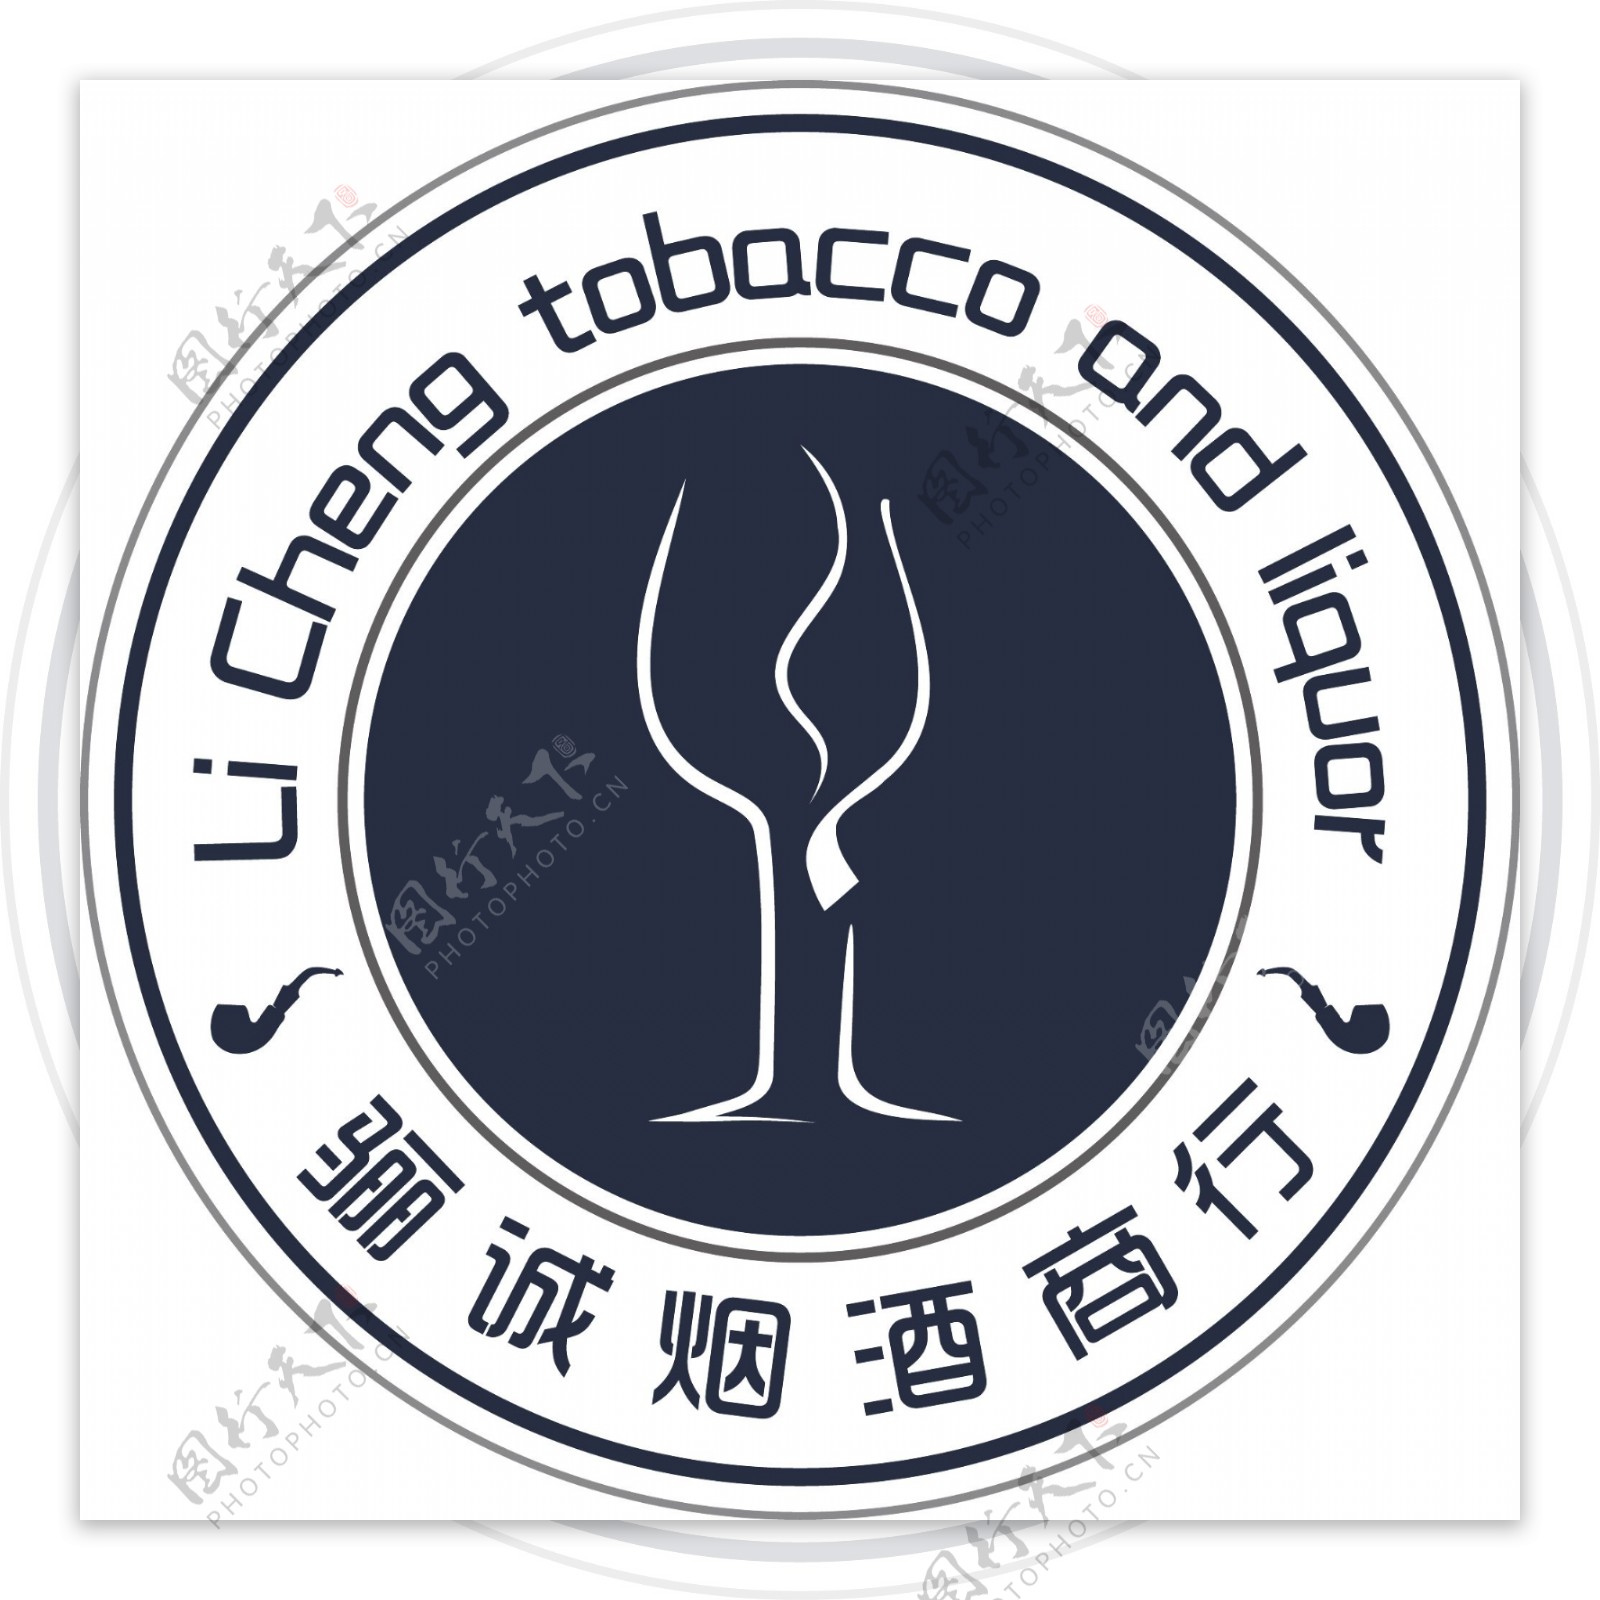 骊诚烟酒logo